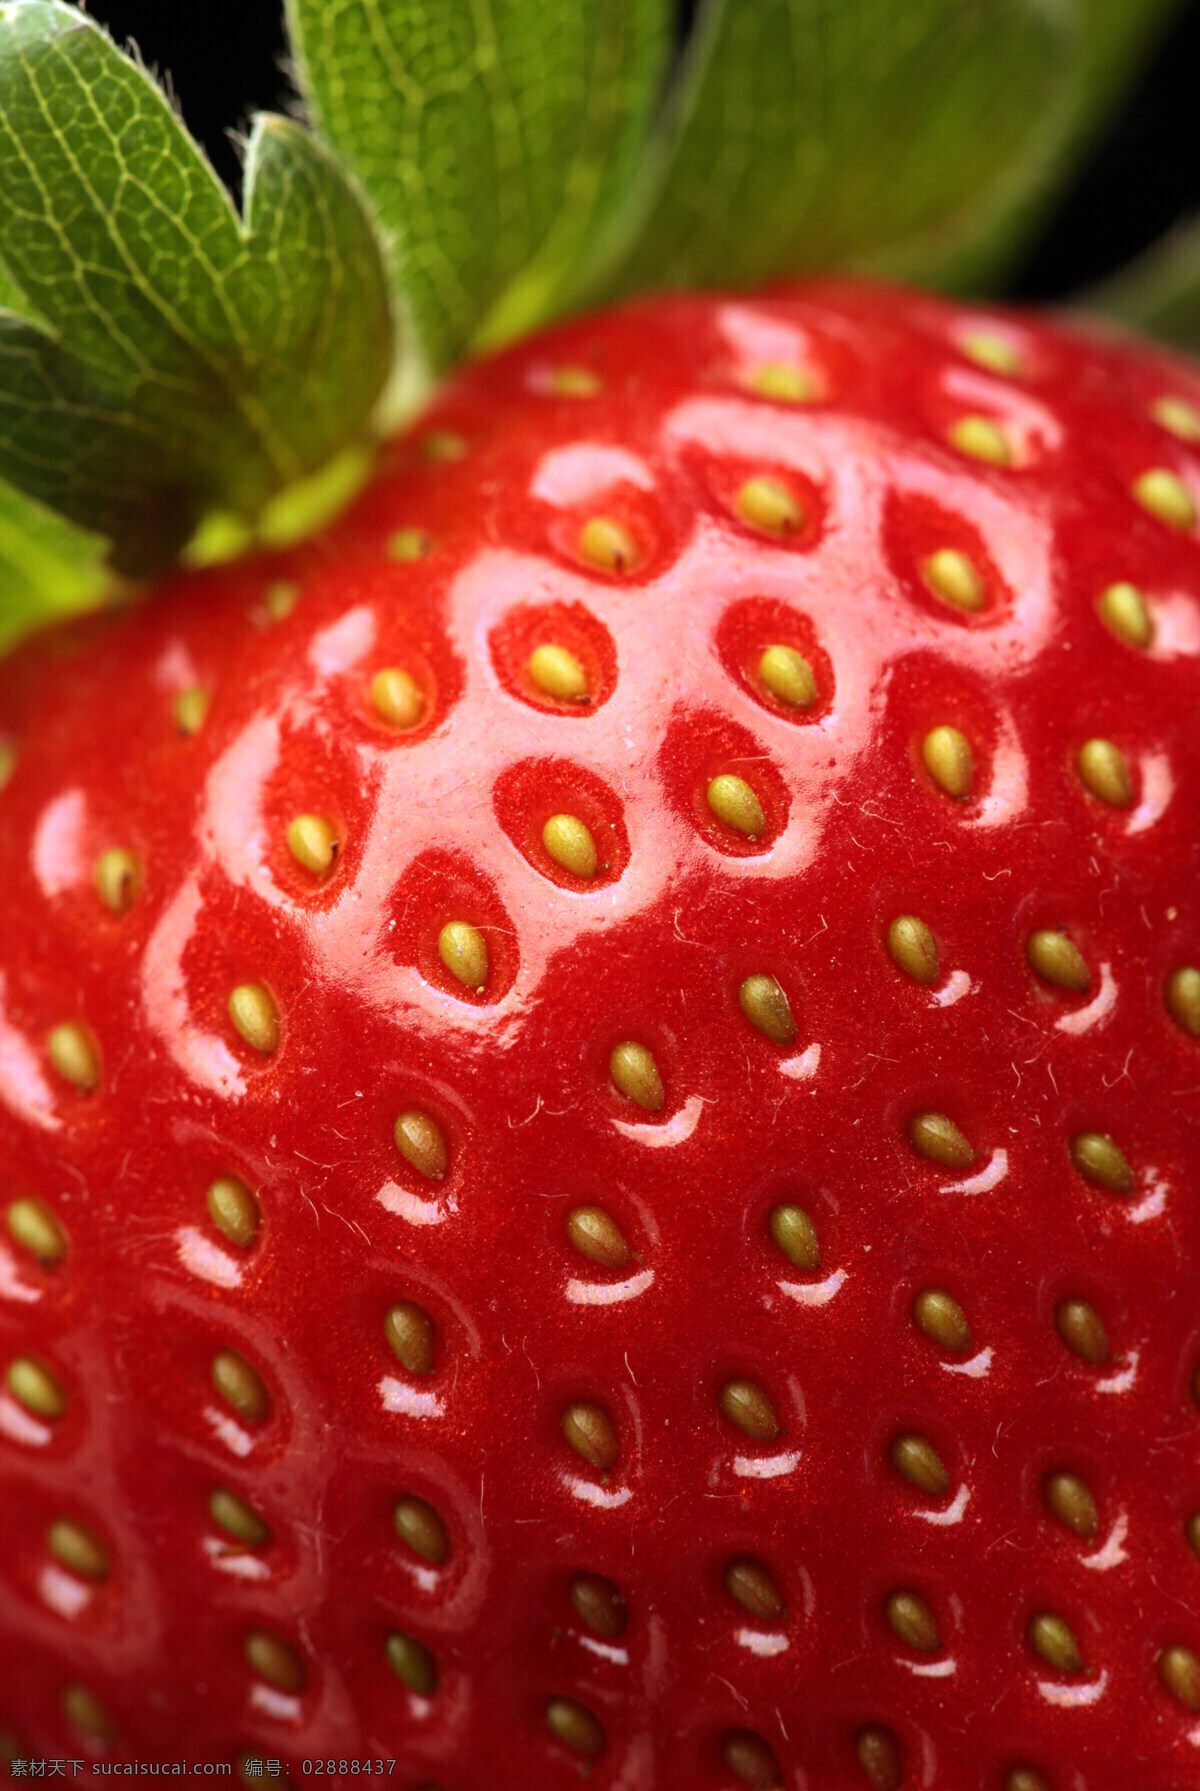 张 新鲜 草莓 高清 水果 高清图片 草莓高清图片 水果高清图 红色